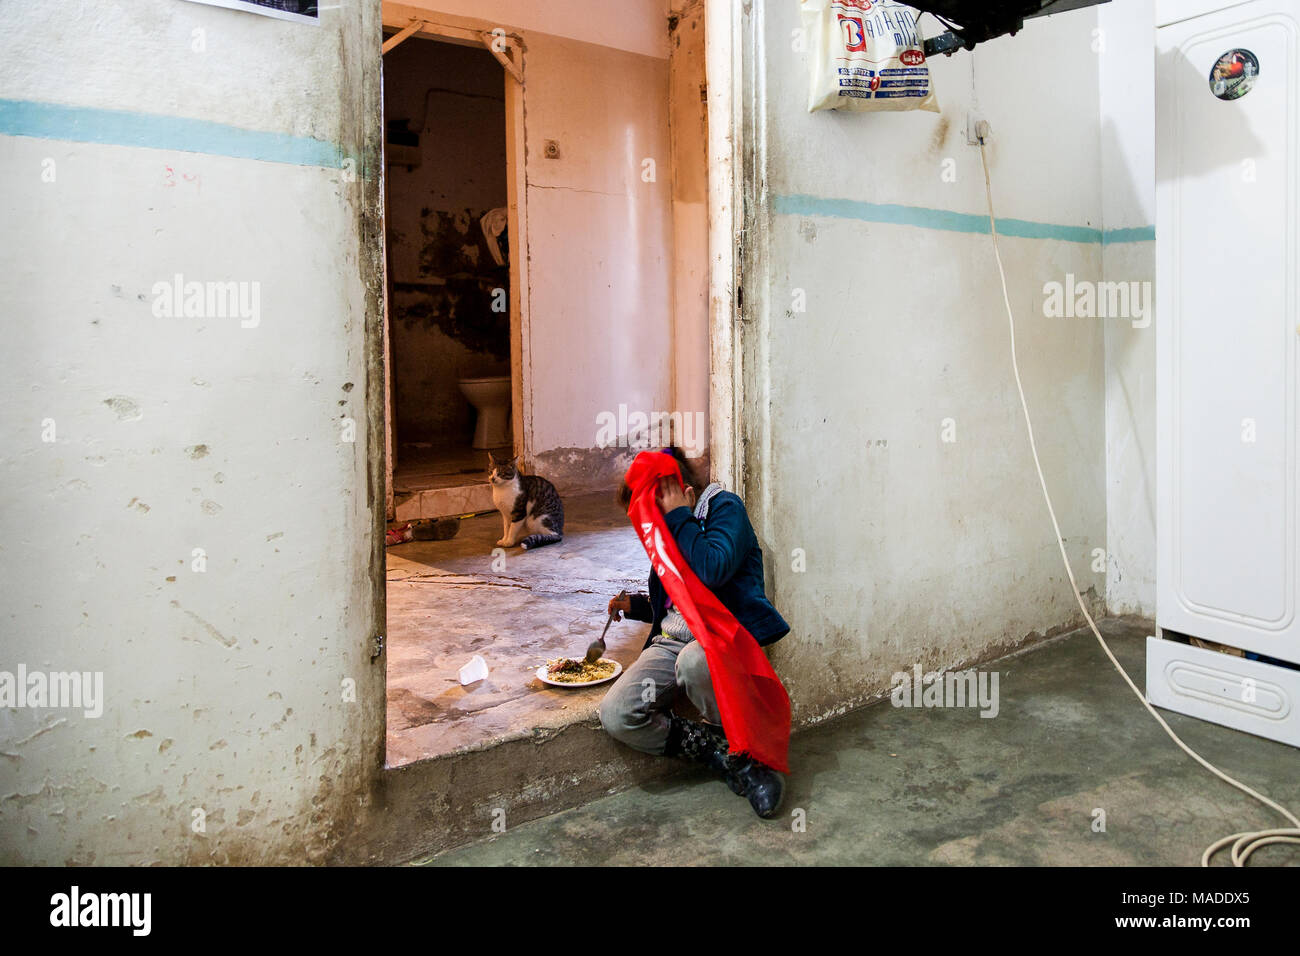 Bilin, Palestina, 7 Gennaio 2011: Ragazza palestinese sta avendo un pranzo nella sua casa. Foto Stock